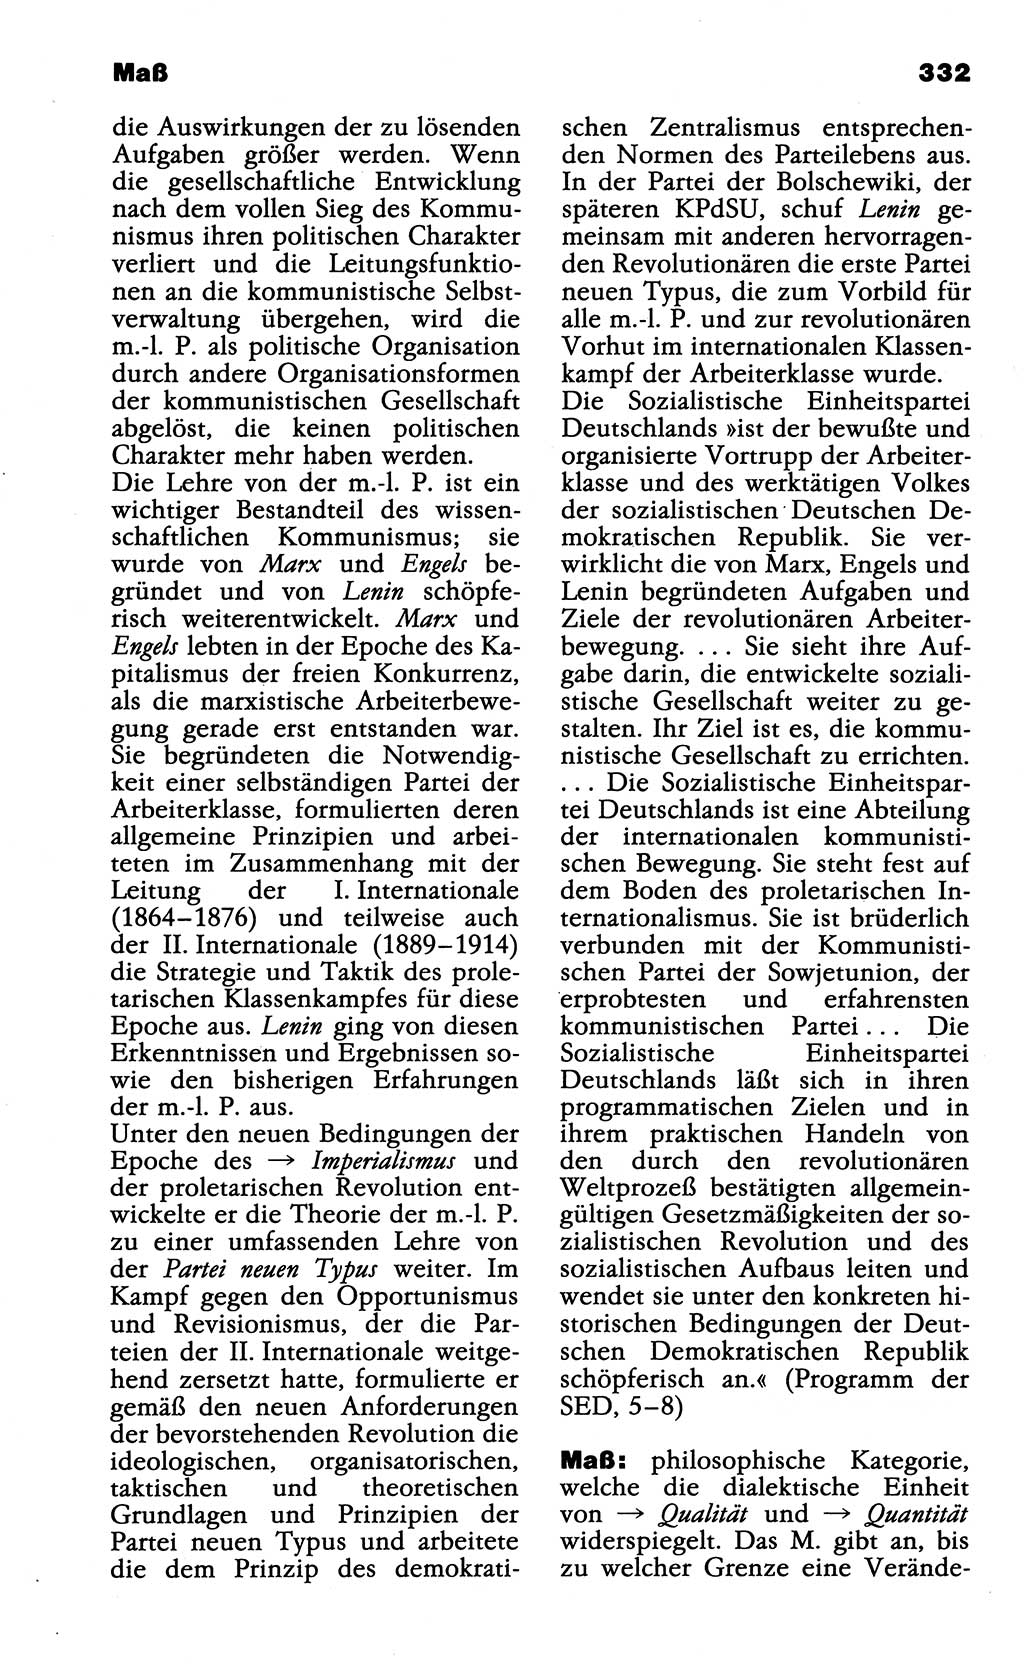 Wörterbuch der marxistisch-leninistischen Philosophie [Deutsche Demokratische Republik (DDR)] 1985, Seite 332 (Wb. ML Phil. DDR 1985, S. 332)